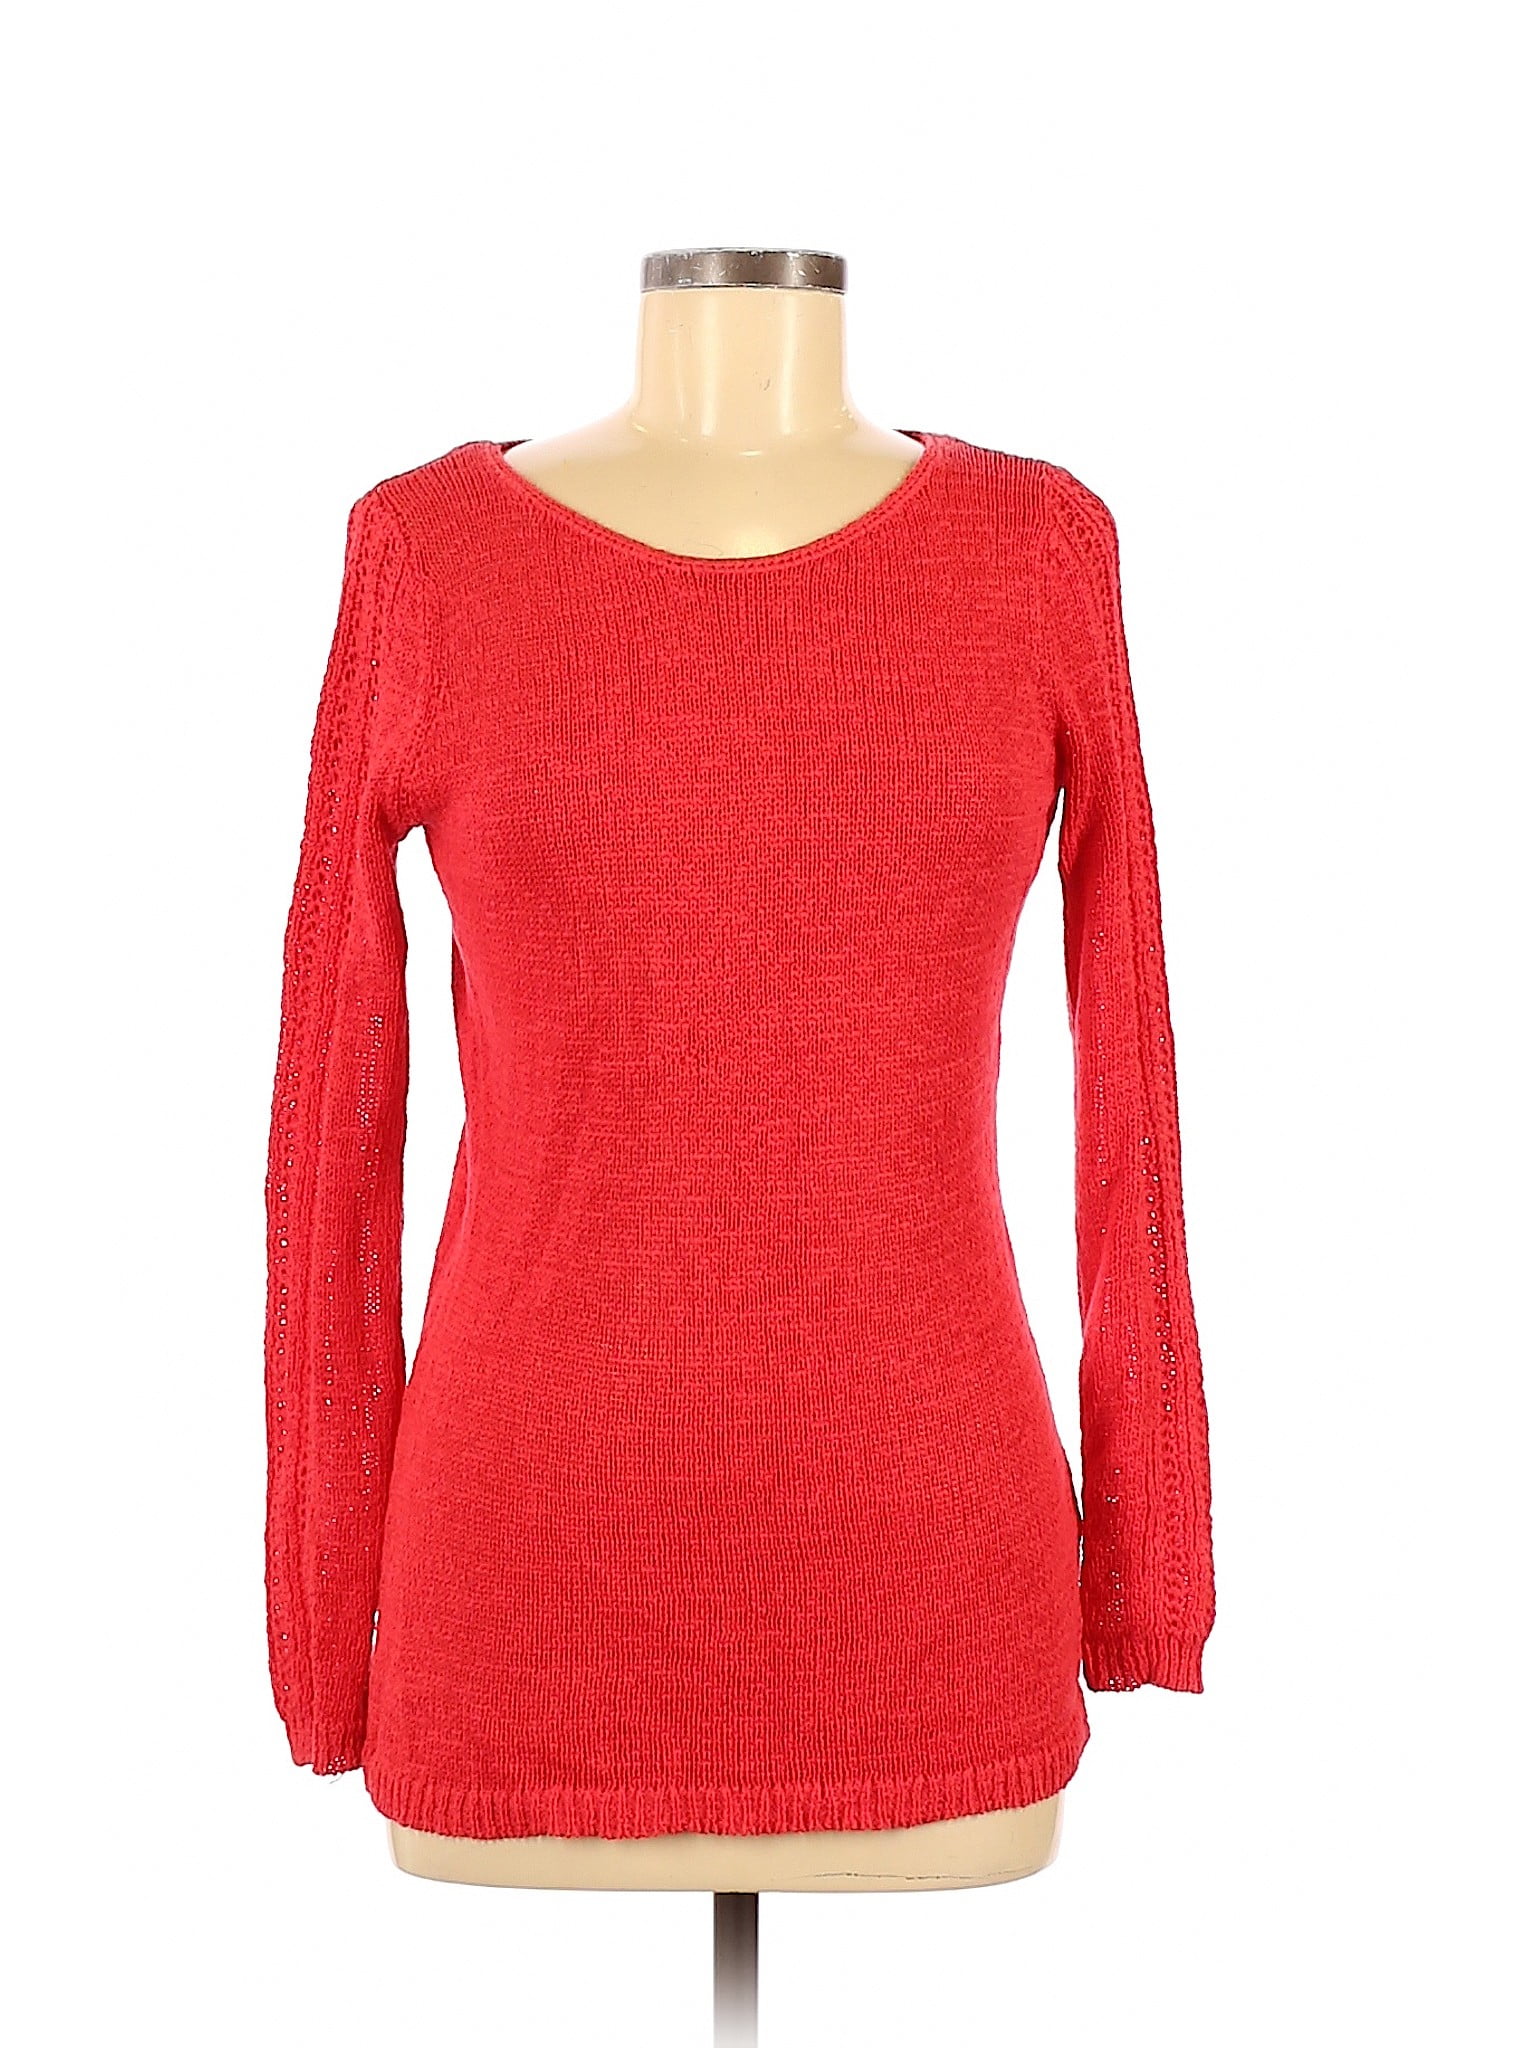 Rachel Zoe - Pre-Owned Rachel Zoe Women's Size S Pullover Sweater ...